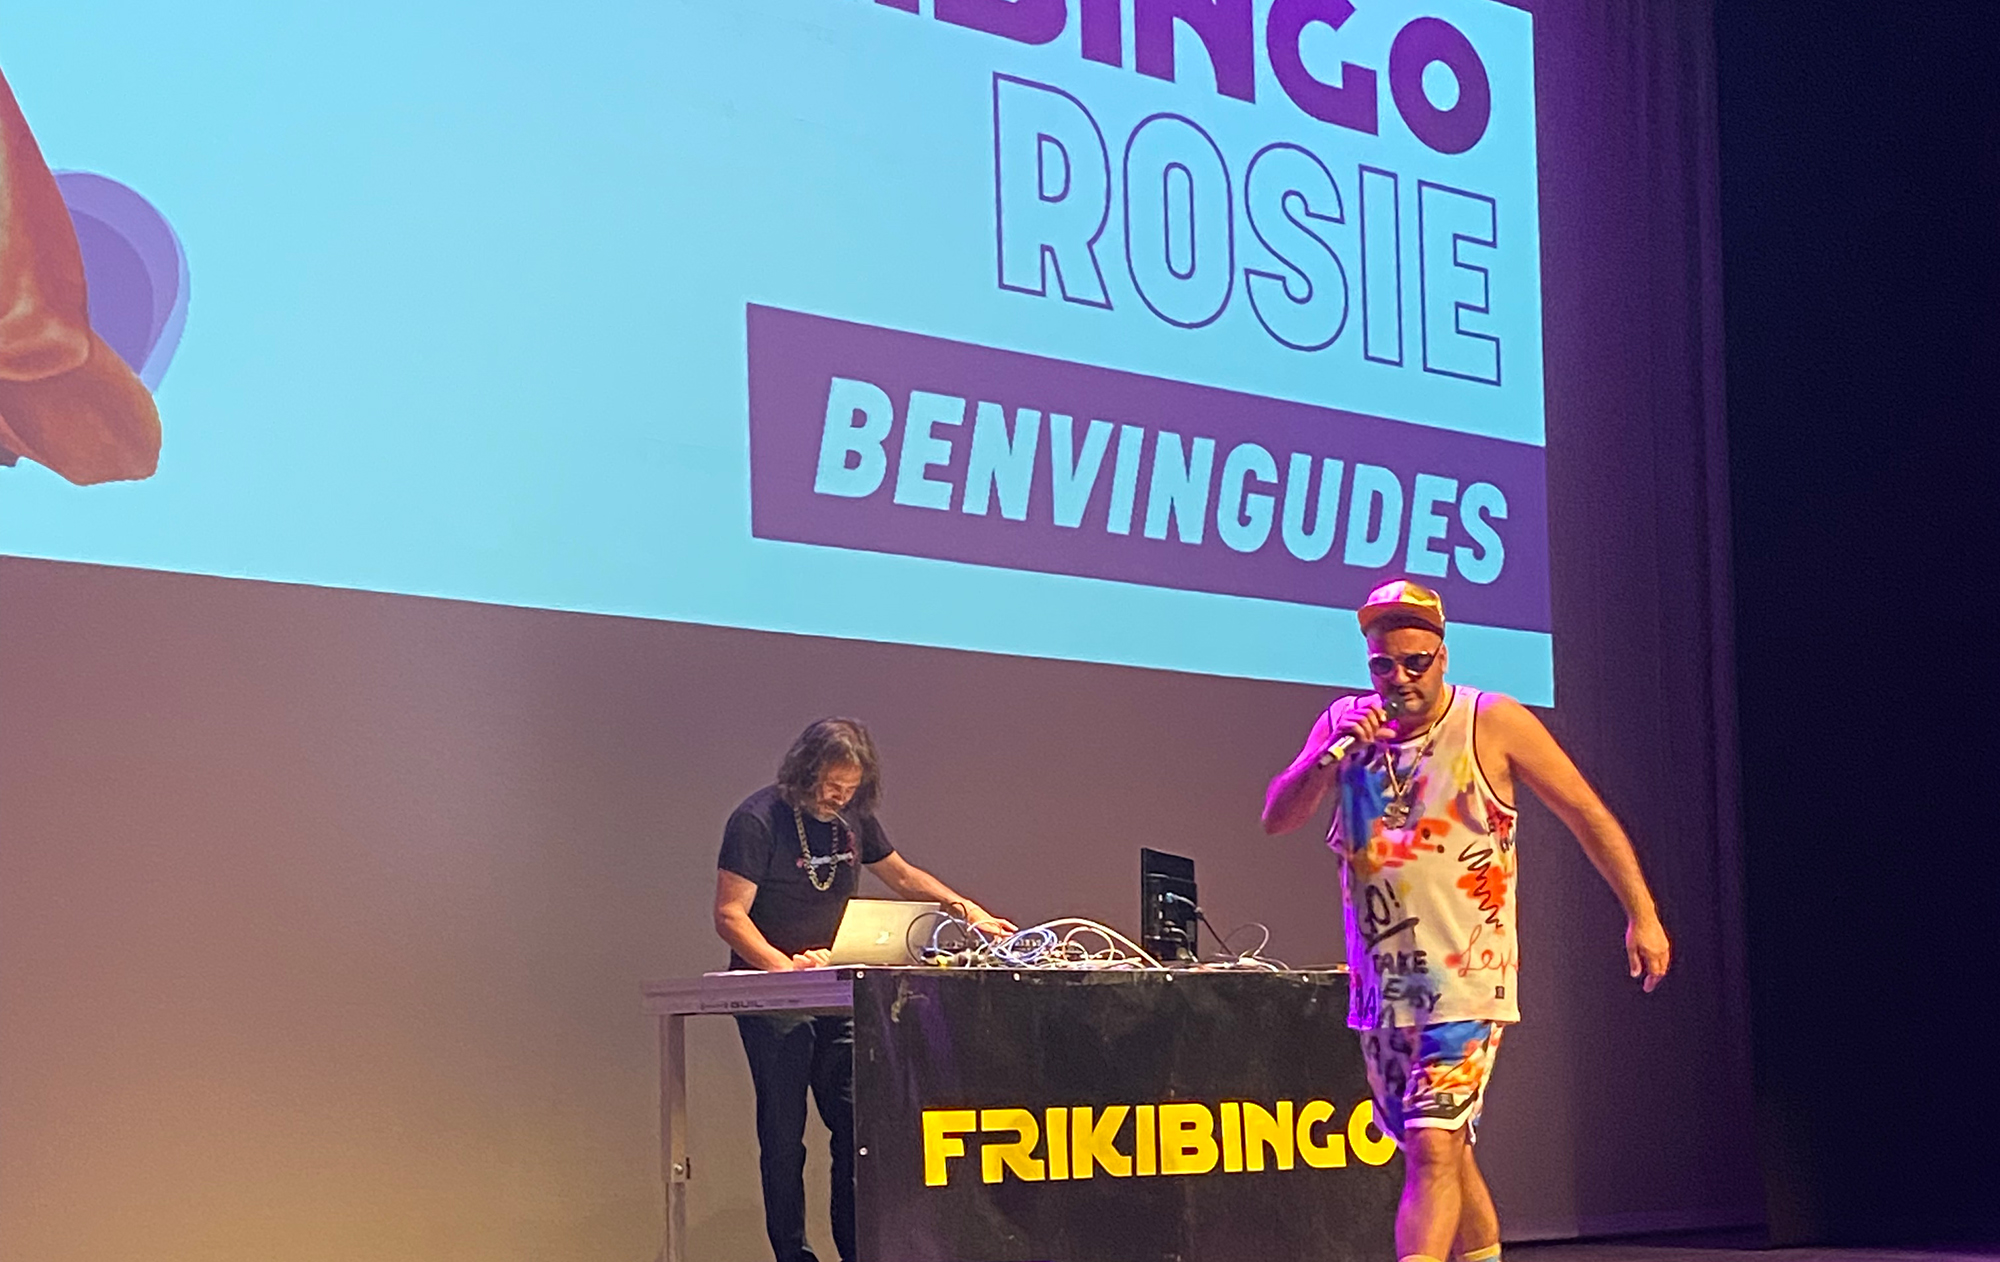 Gran participació en la segona edició del Frikibingo Rosie a Sallent